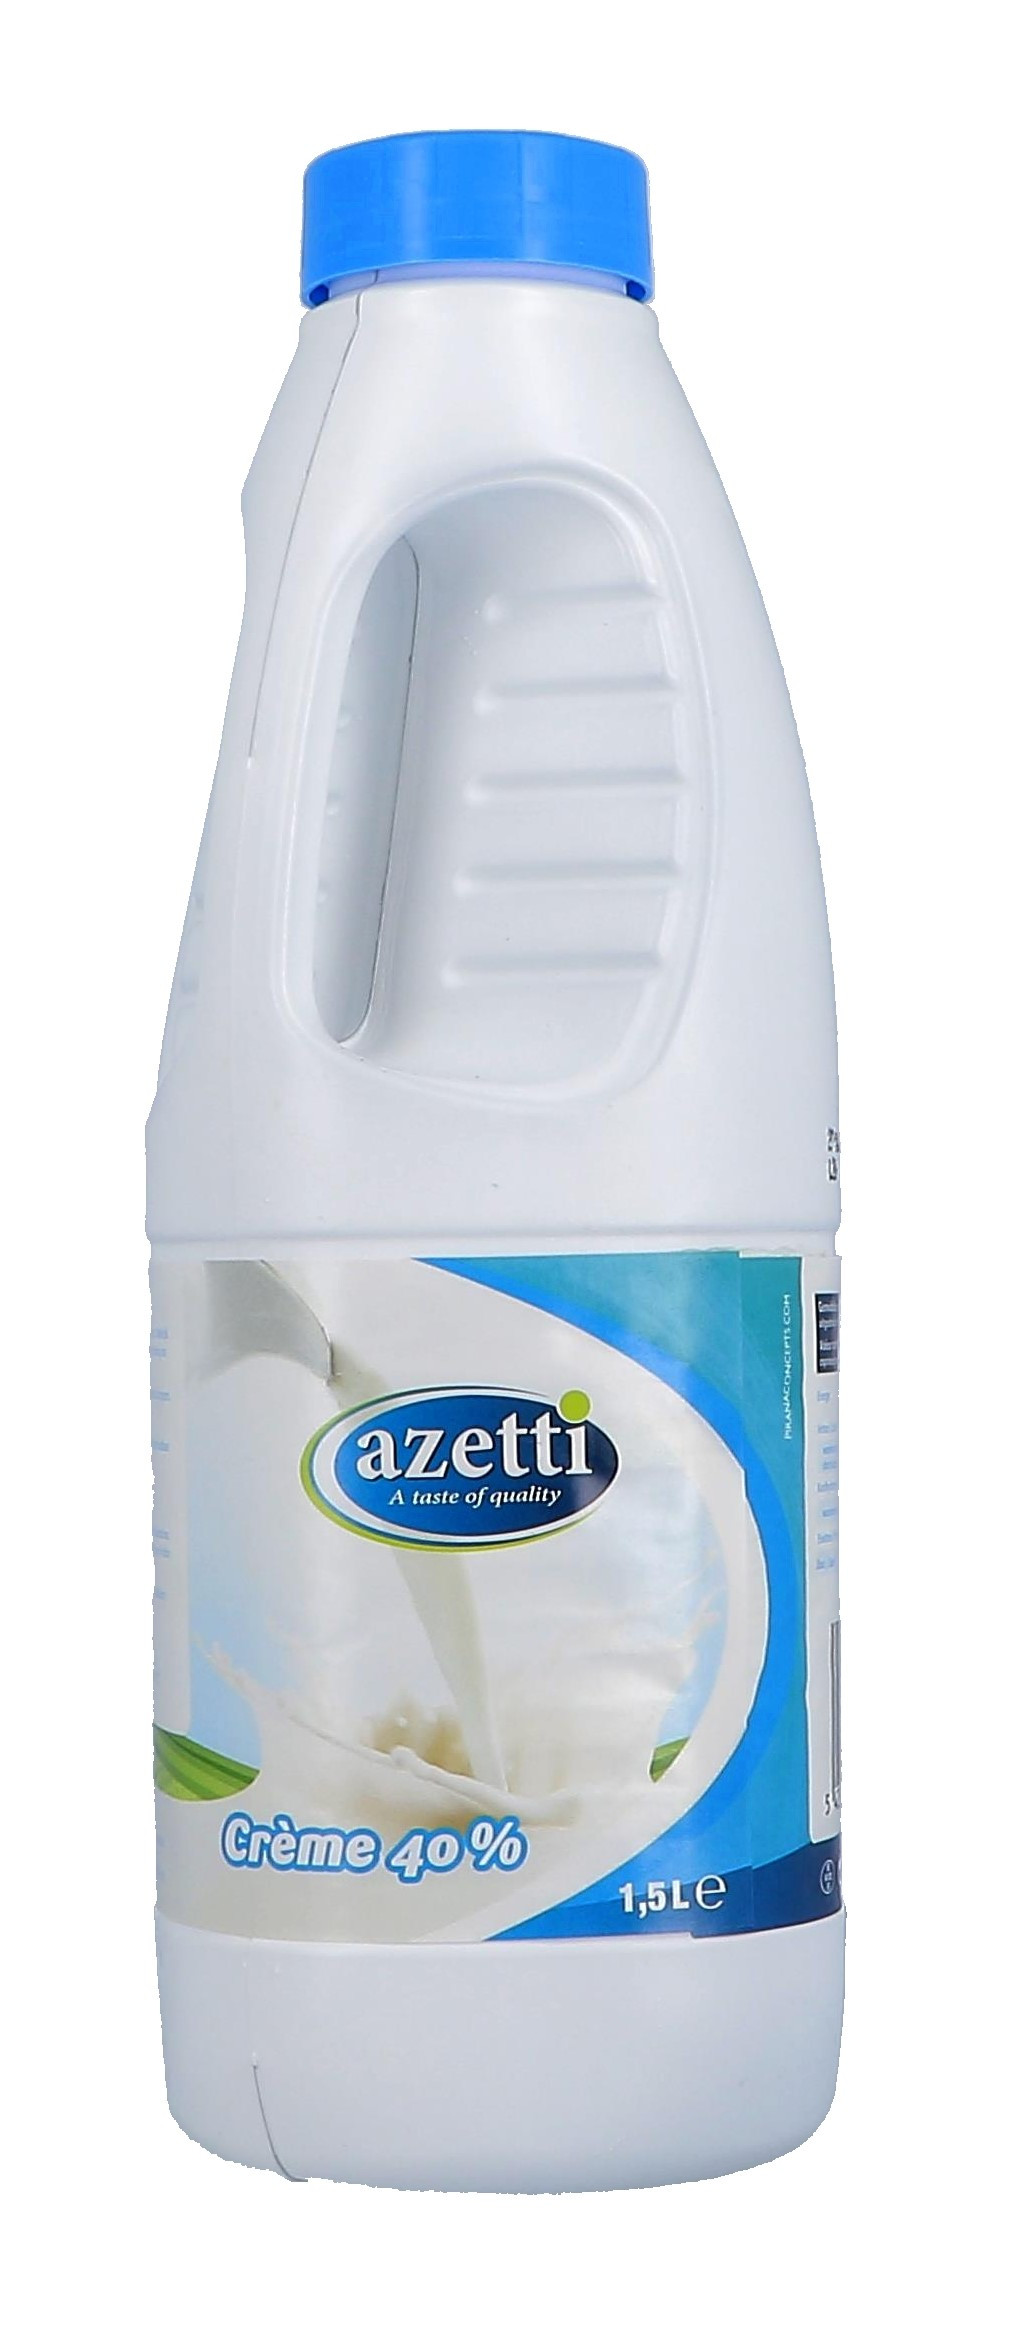 Azetti crème 40% 1,5L (Ei- & Room producten)